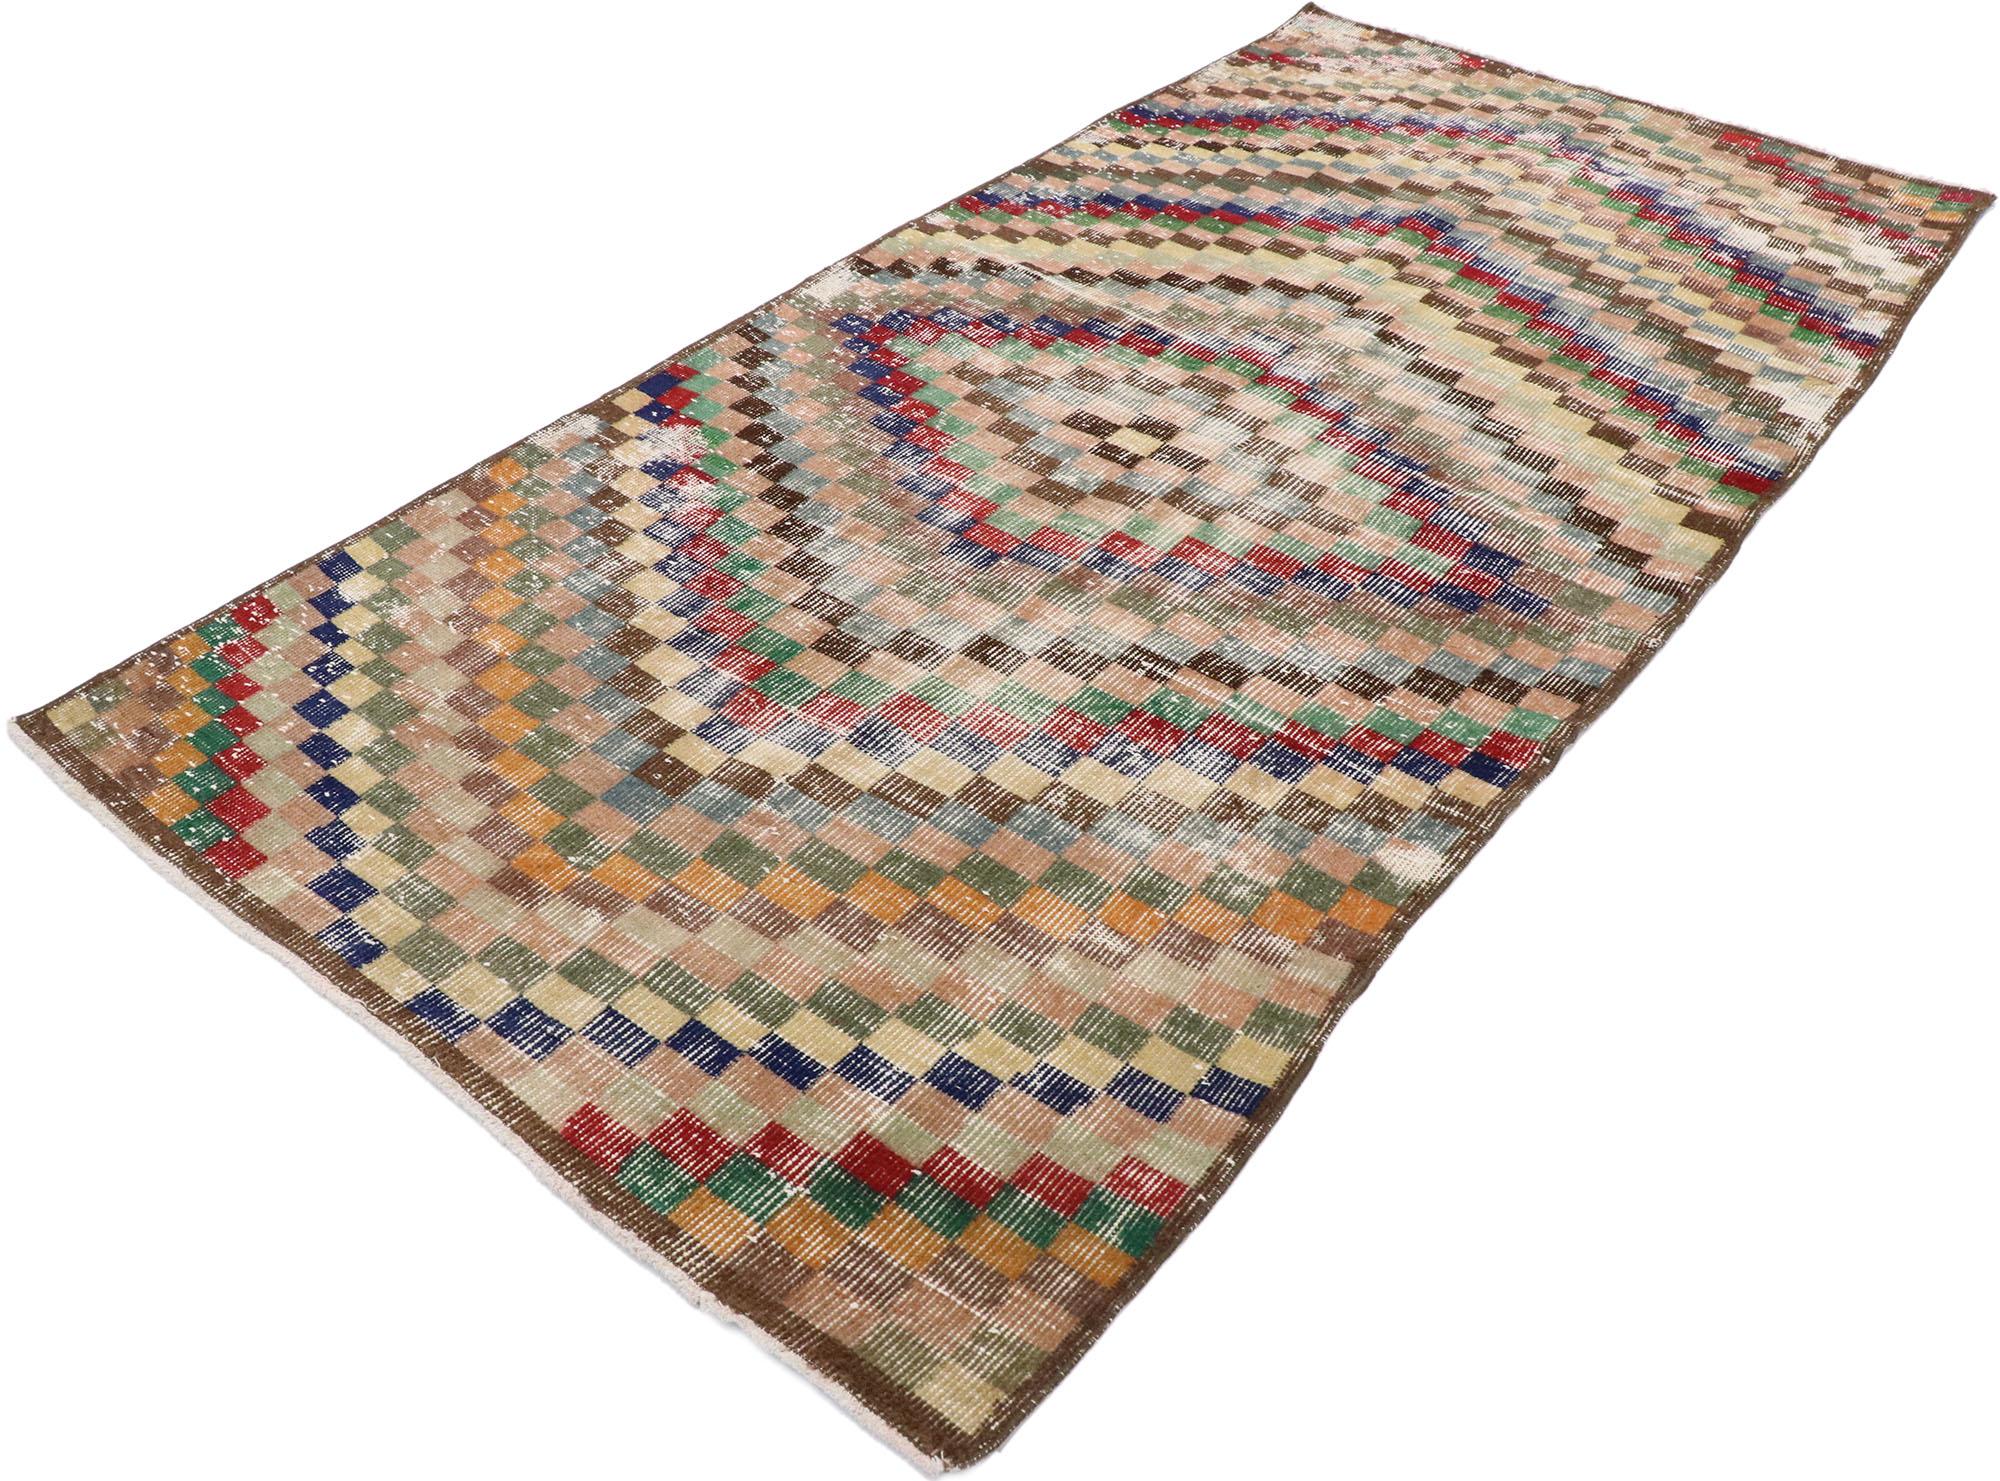 53354, Tapis vintage turc Sivas avec un style cubiste moderne. Ce tapis turc vintage Sivas en laine nouée à la main présente un motif à carreaux sur toute sa surface. Des diamants concentriques, composés de petits cubes et de carrés, rayonnent vers